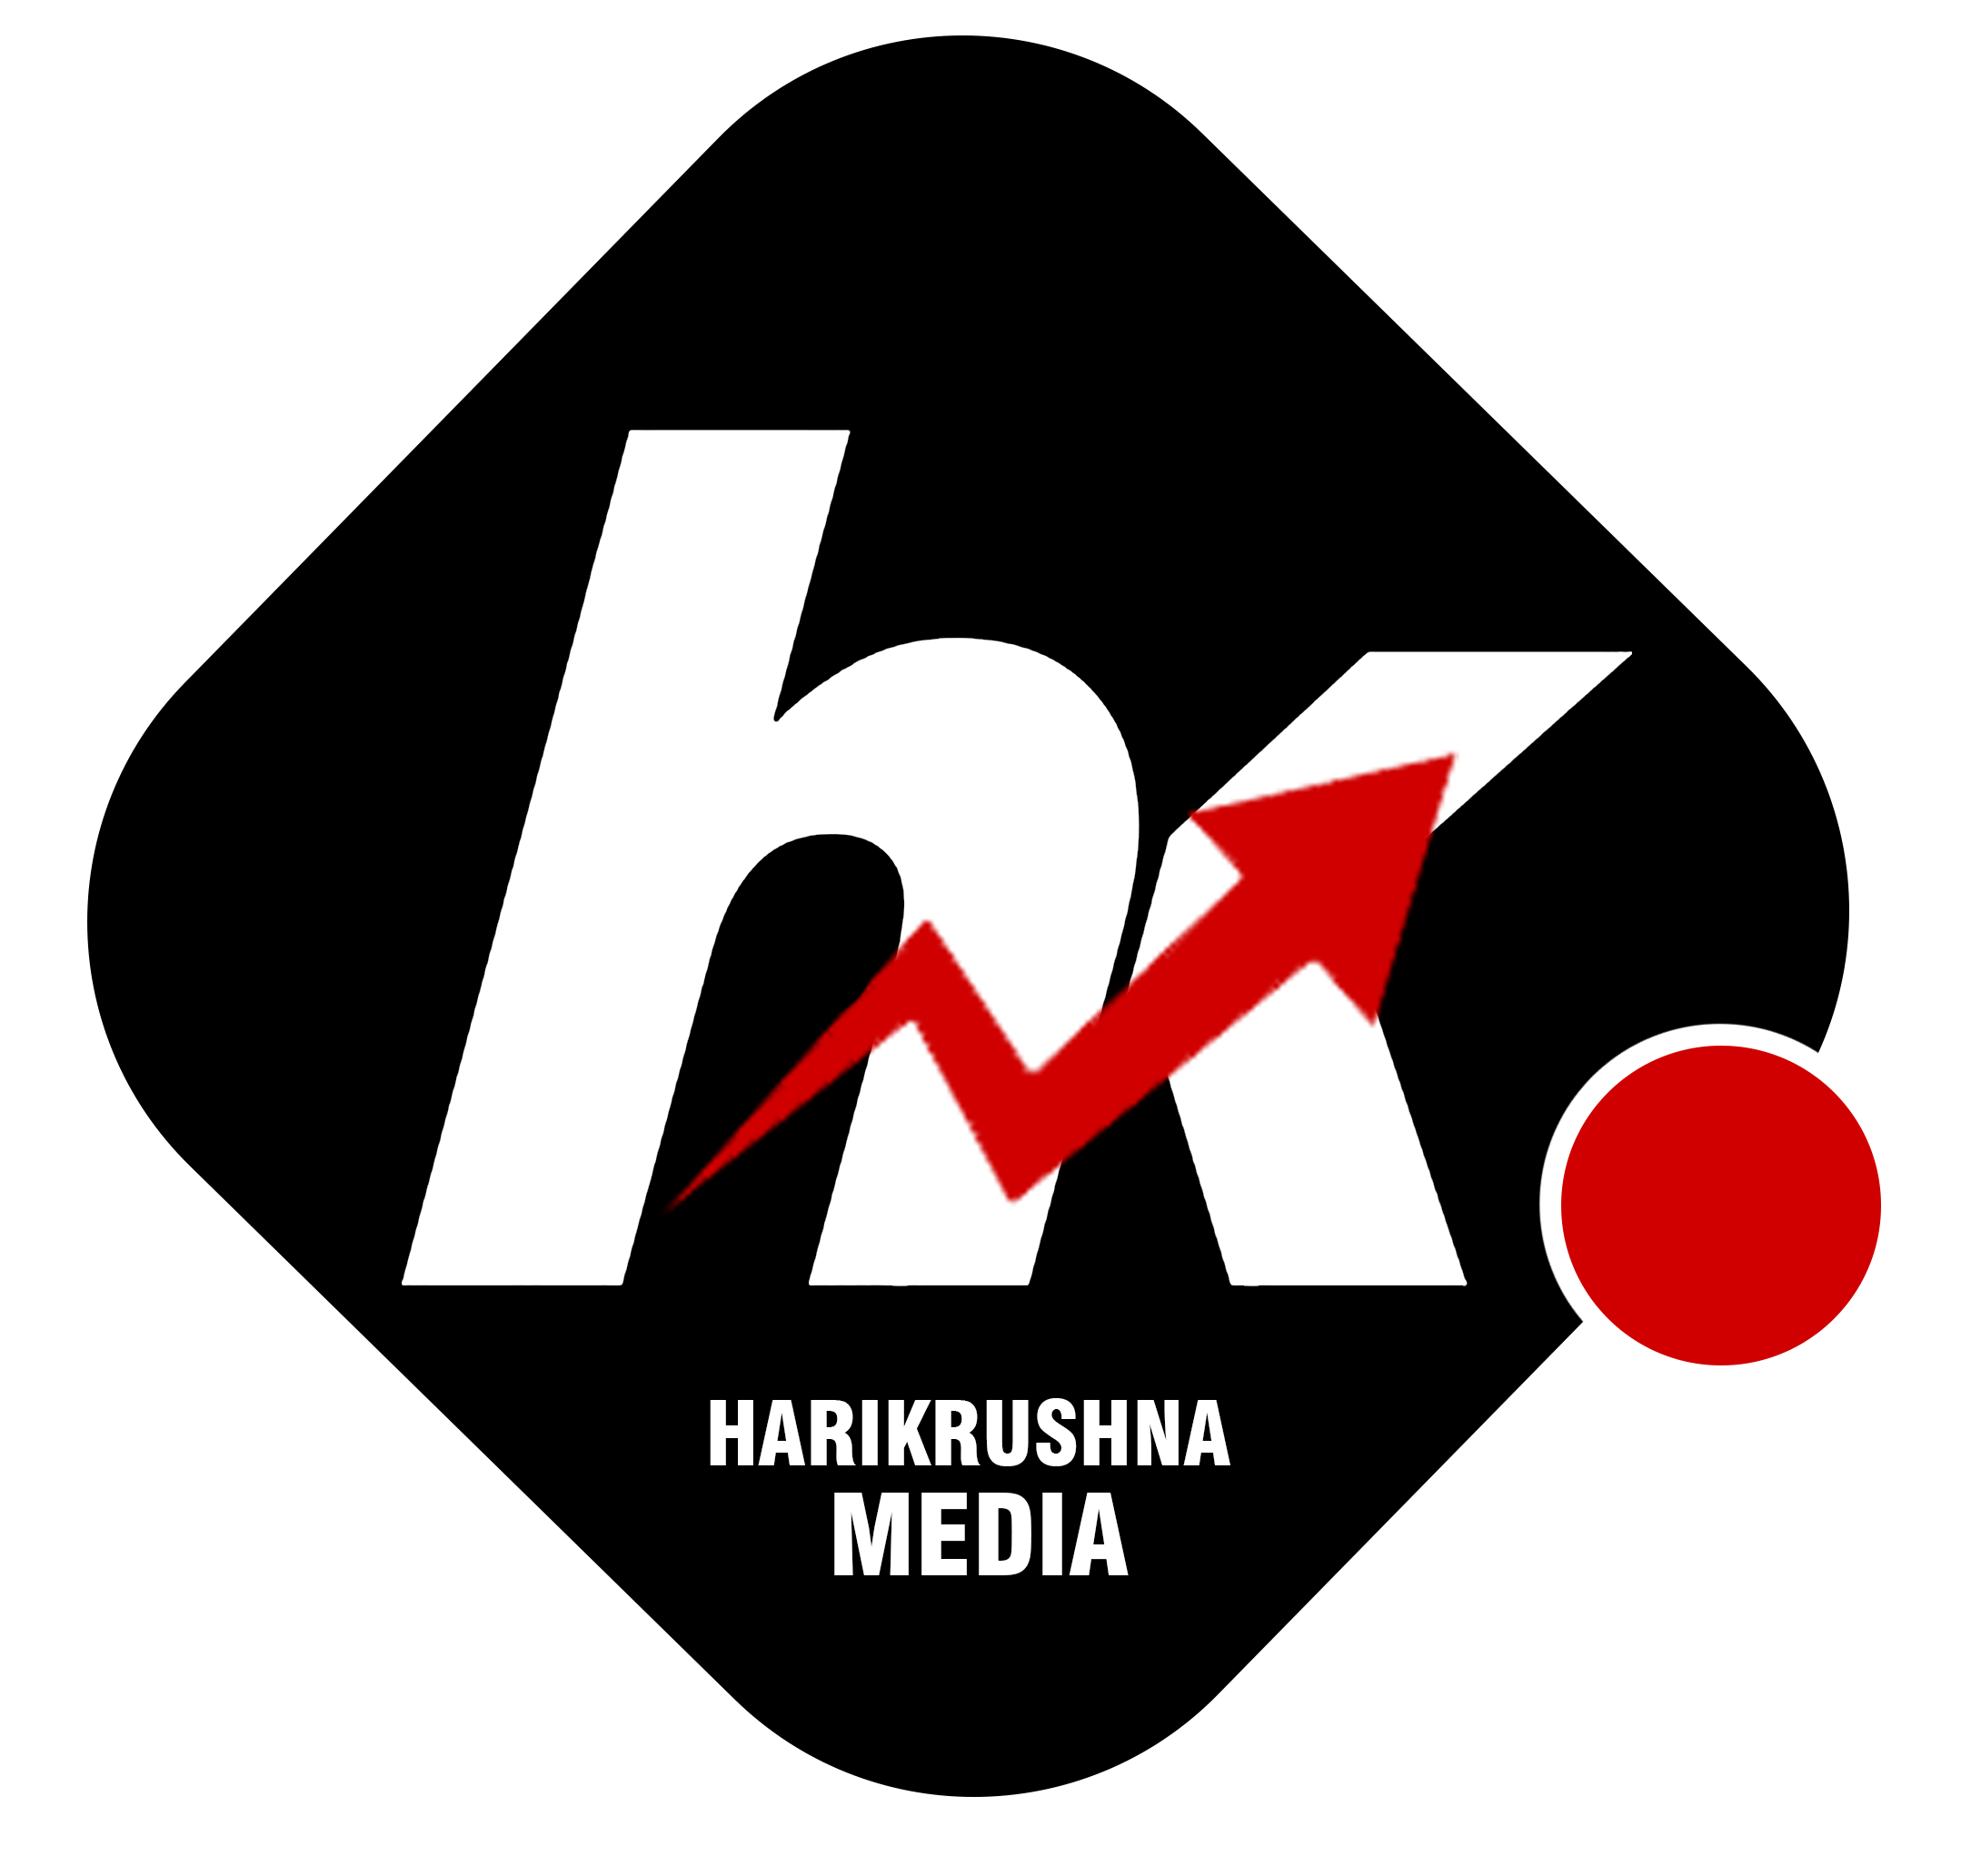 Harikrushna Media